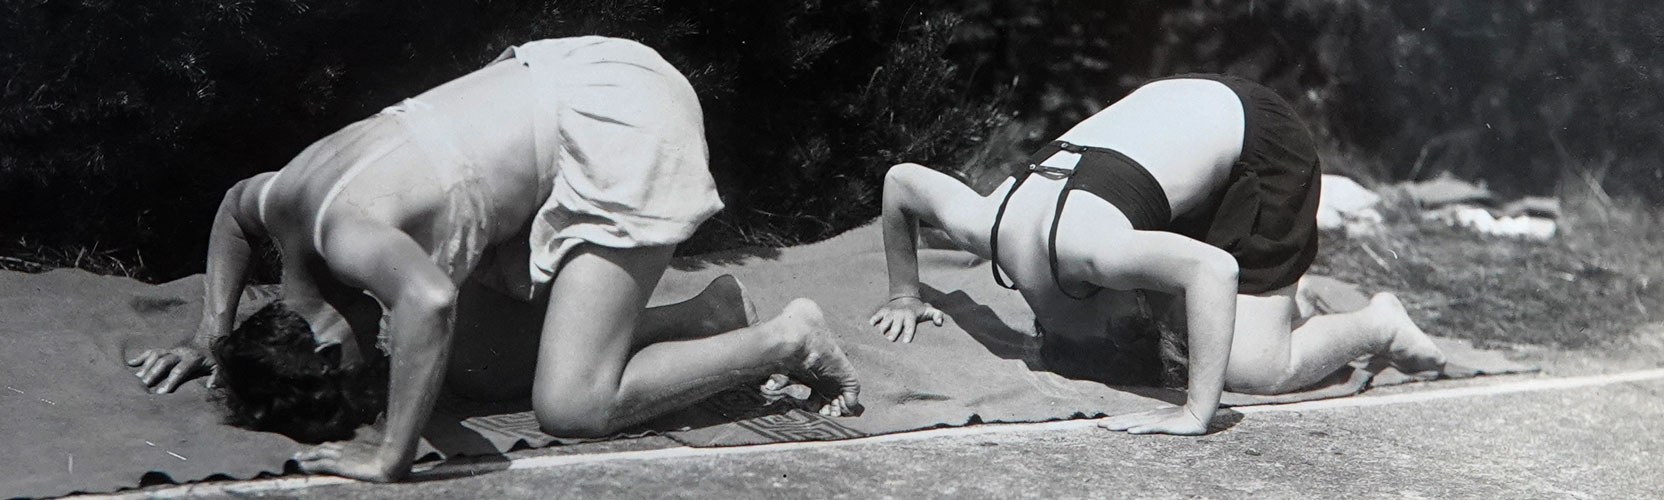 Zwei Frauen bei gymnastischen Übungen